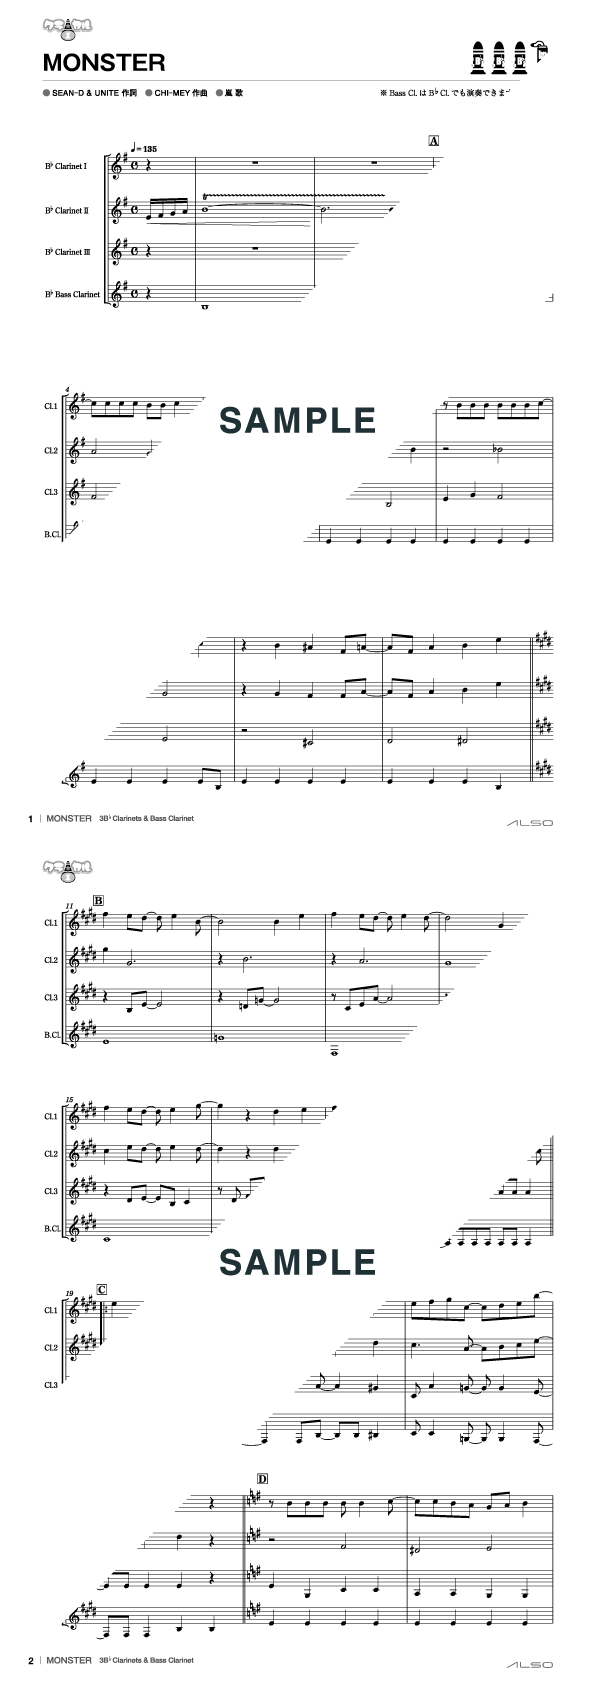 楽譜 クラリネットアンサンブル - 管楽器